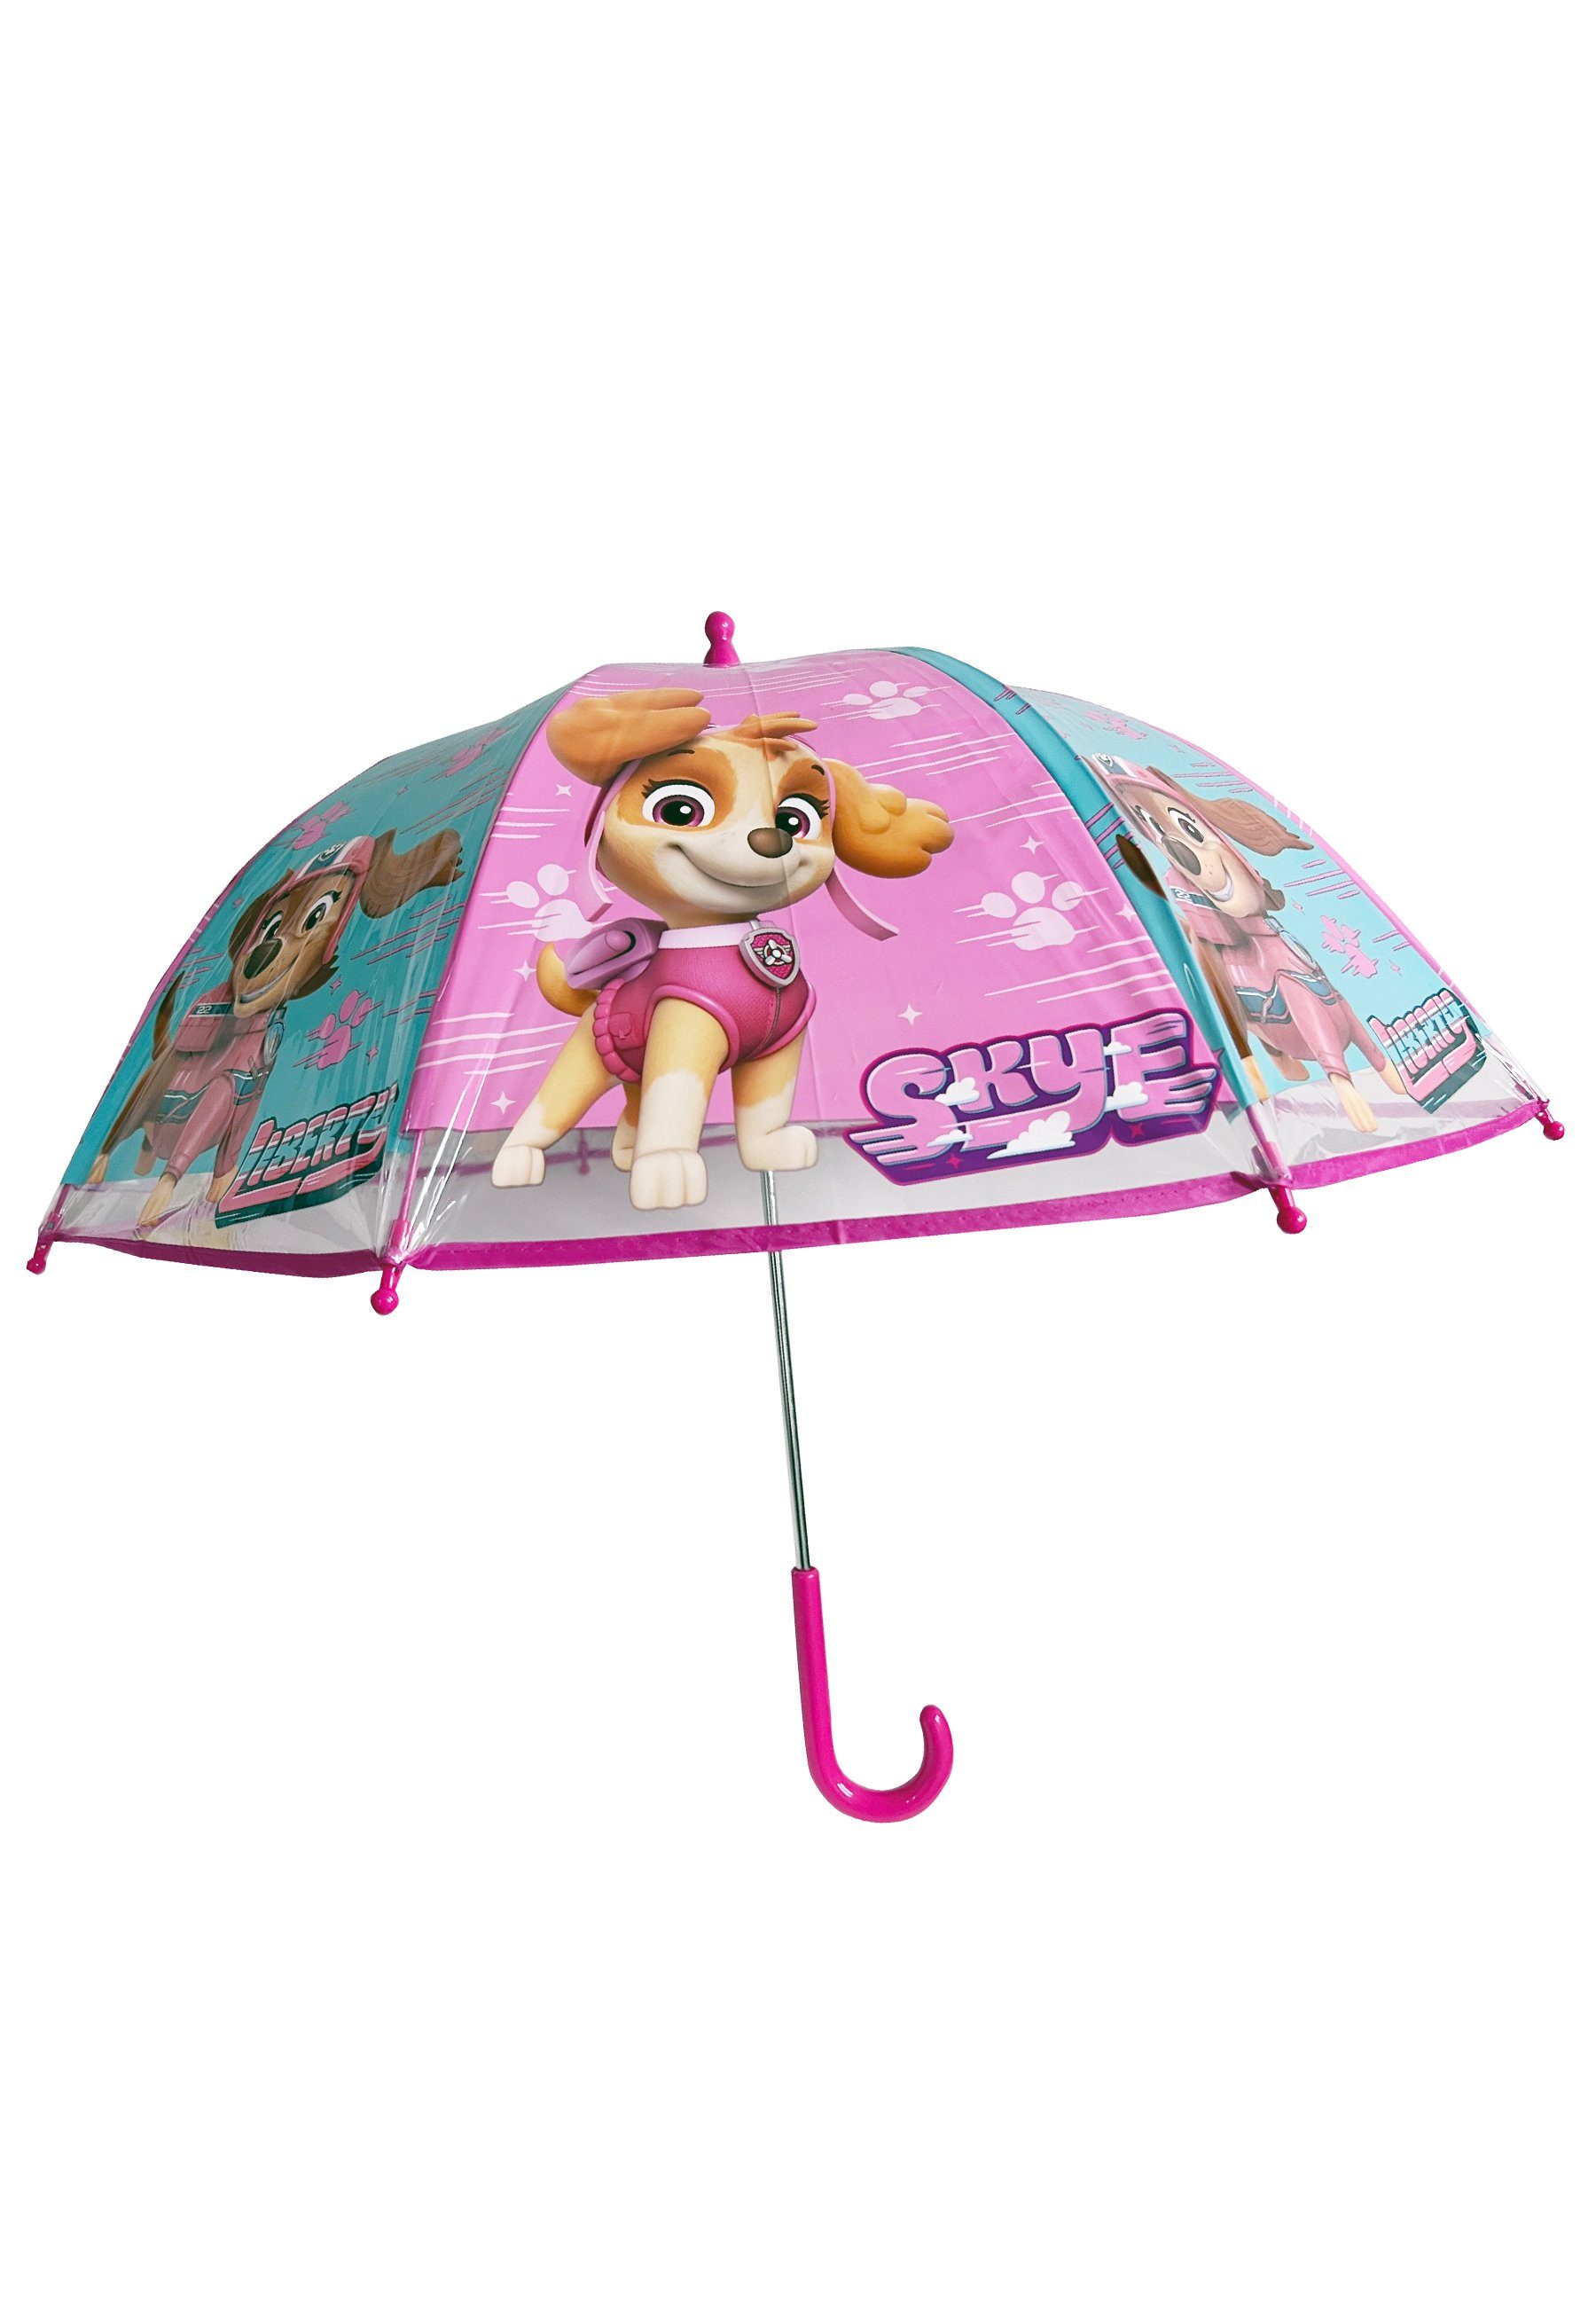 Stockregenschirm Stock-Schirm Kuppelschirm PATROL Kinder Regenschirm Skye PAW